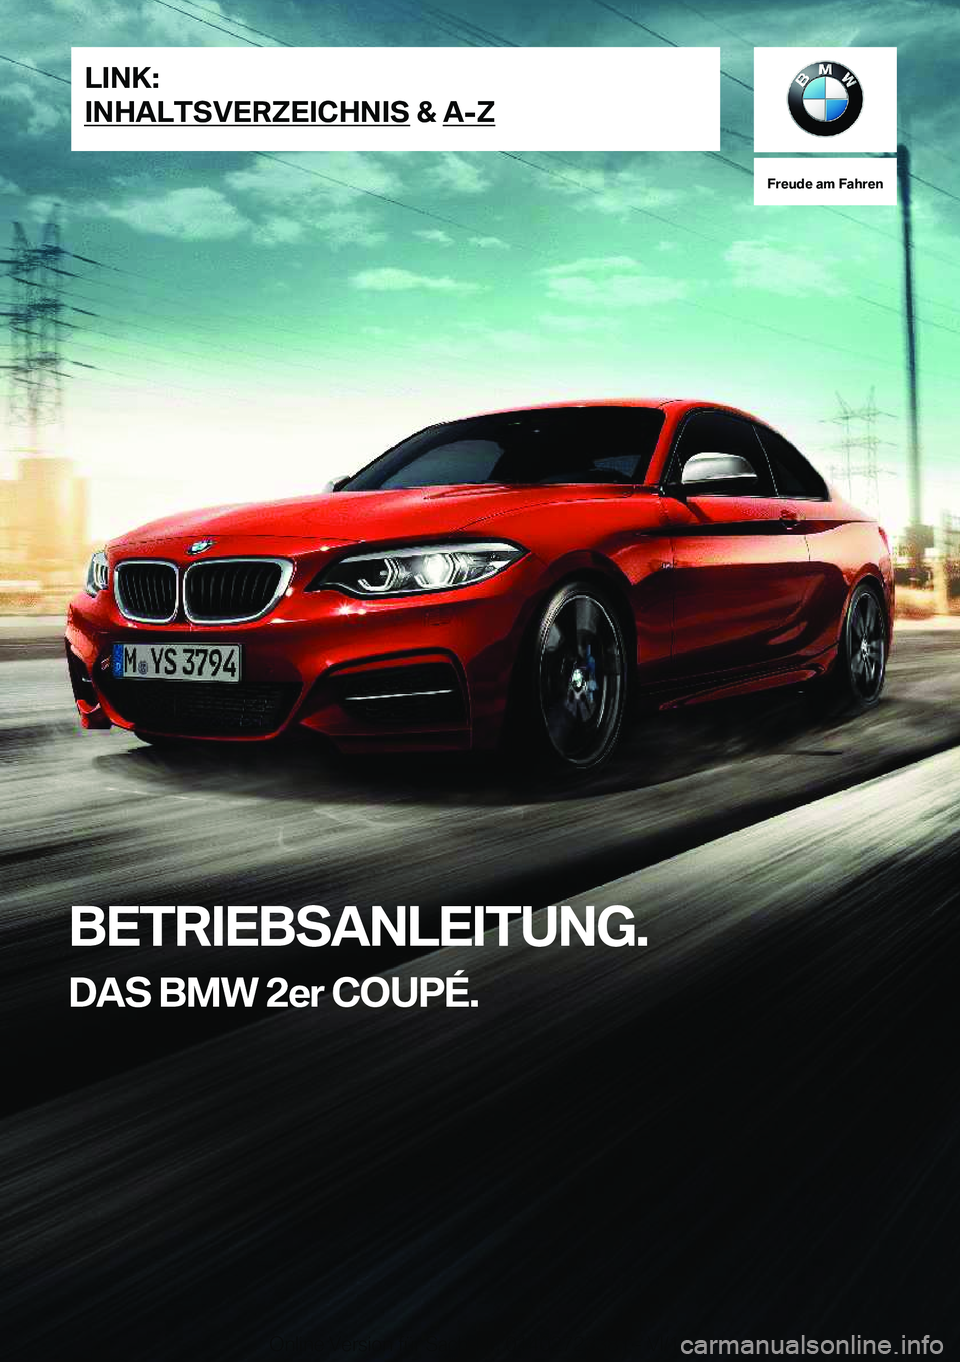 BMW 2 SERIES COUPE 2019  Betriebsanleitungen (in German) �F�r�e�u�d�e��a�m��F�a�h�r�e�n
�B�E�T�R�I�E�B�S�A�N�L�E�I�T�U�N�G�.�D�A�S��B�M�W��2�e�r��C�O�U�P�